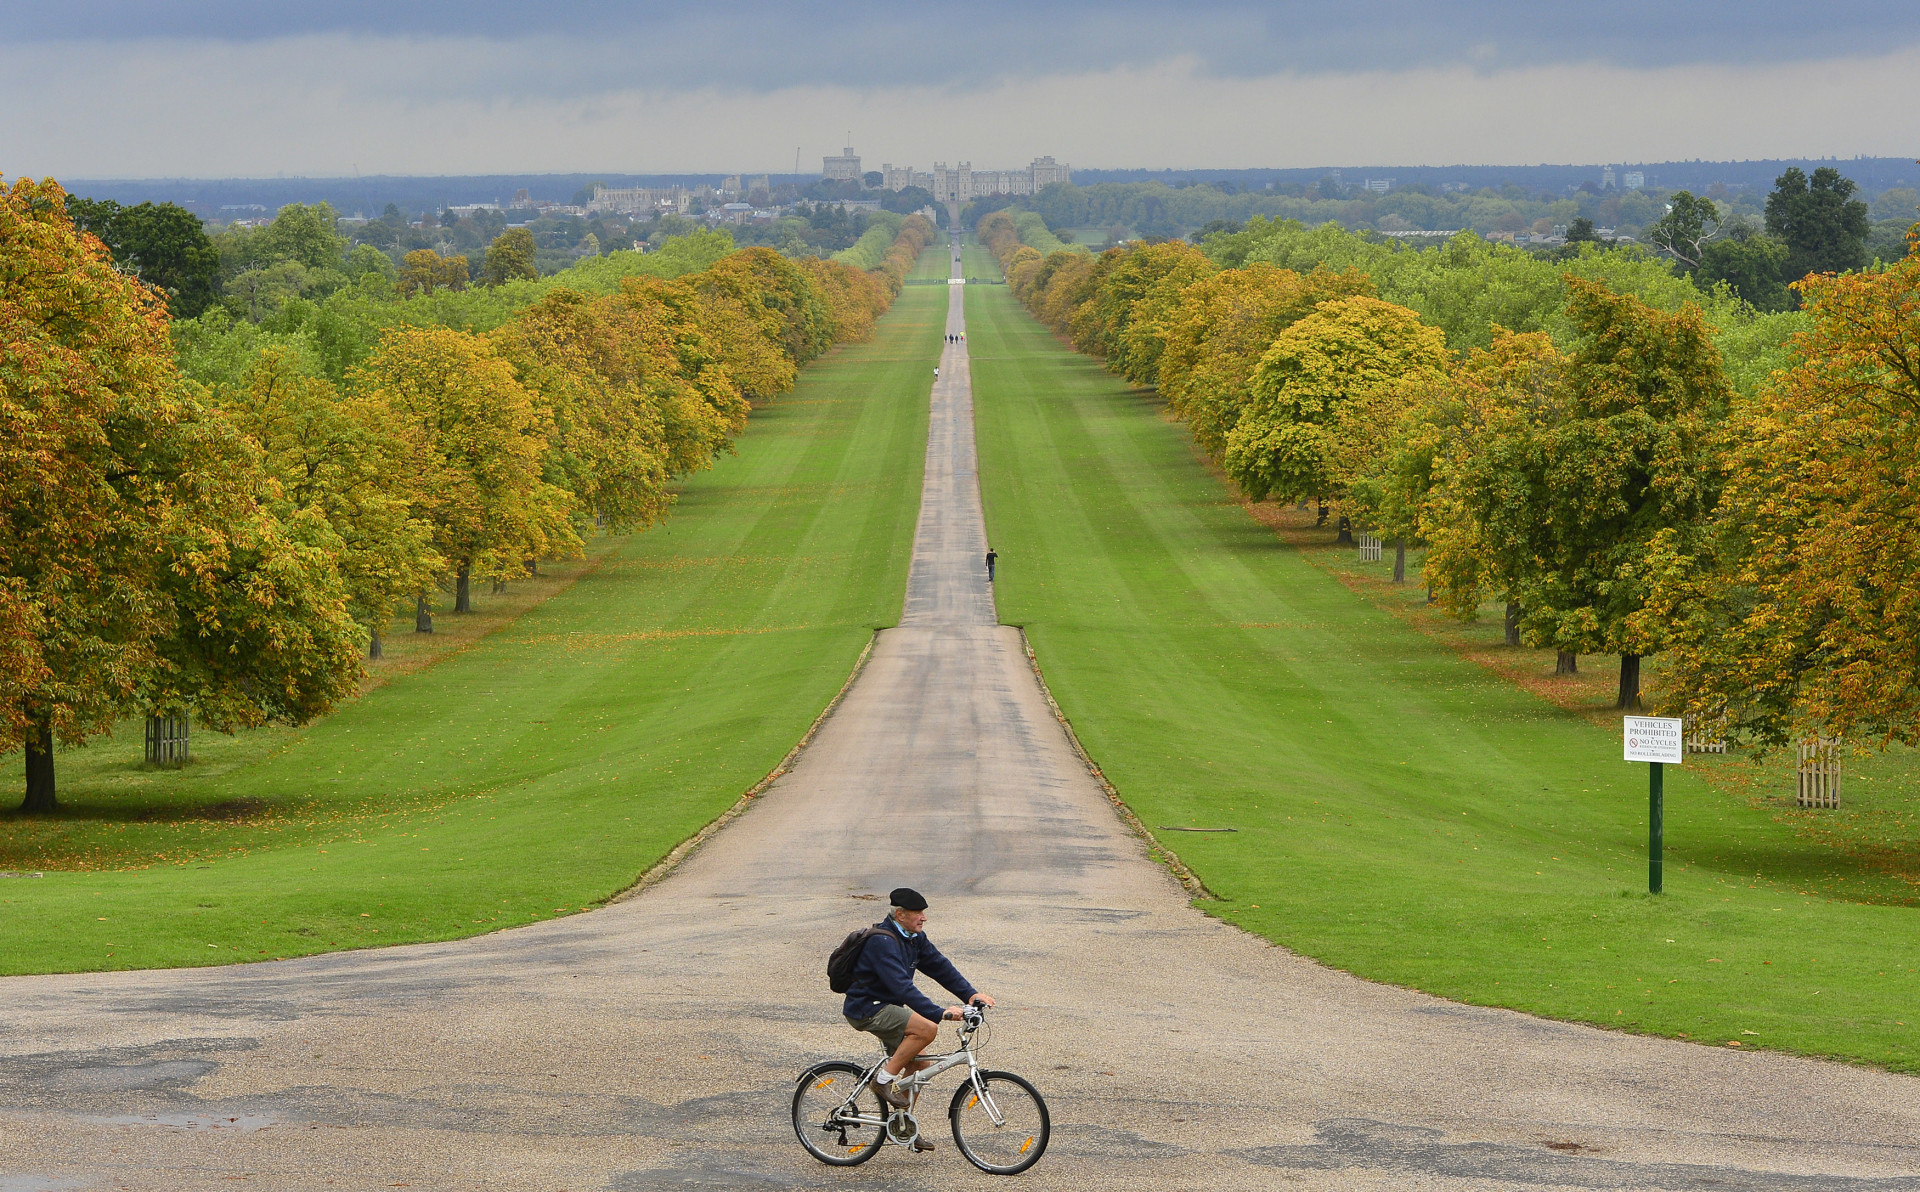 Un homme passe devant la grande allée du parc de Windsor. La ville de Windsor et le château historique sont visibles en arrière-plan.